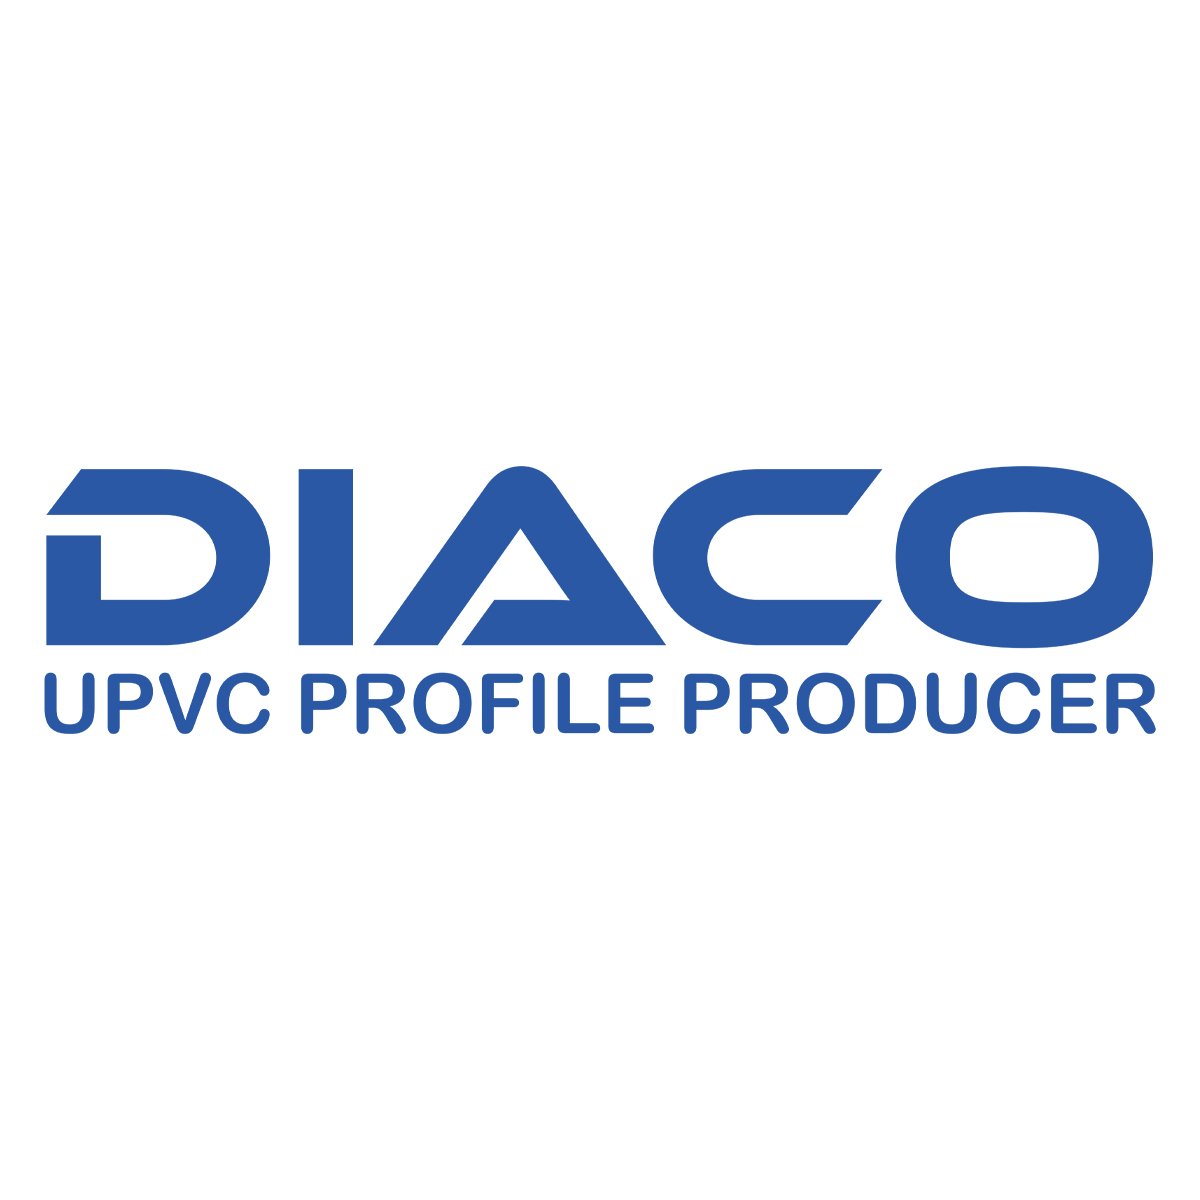 مدیر بازرگانی | Commercial Manager - دیاکو پروفیل | Diaco Profile